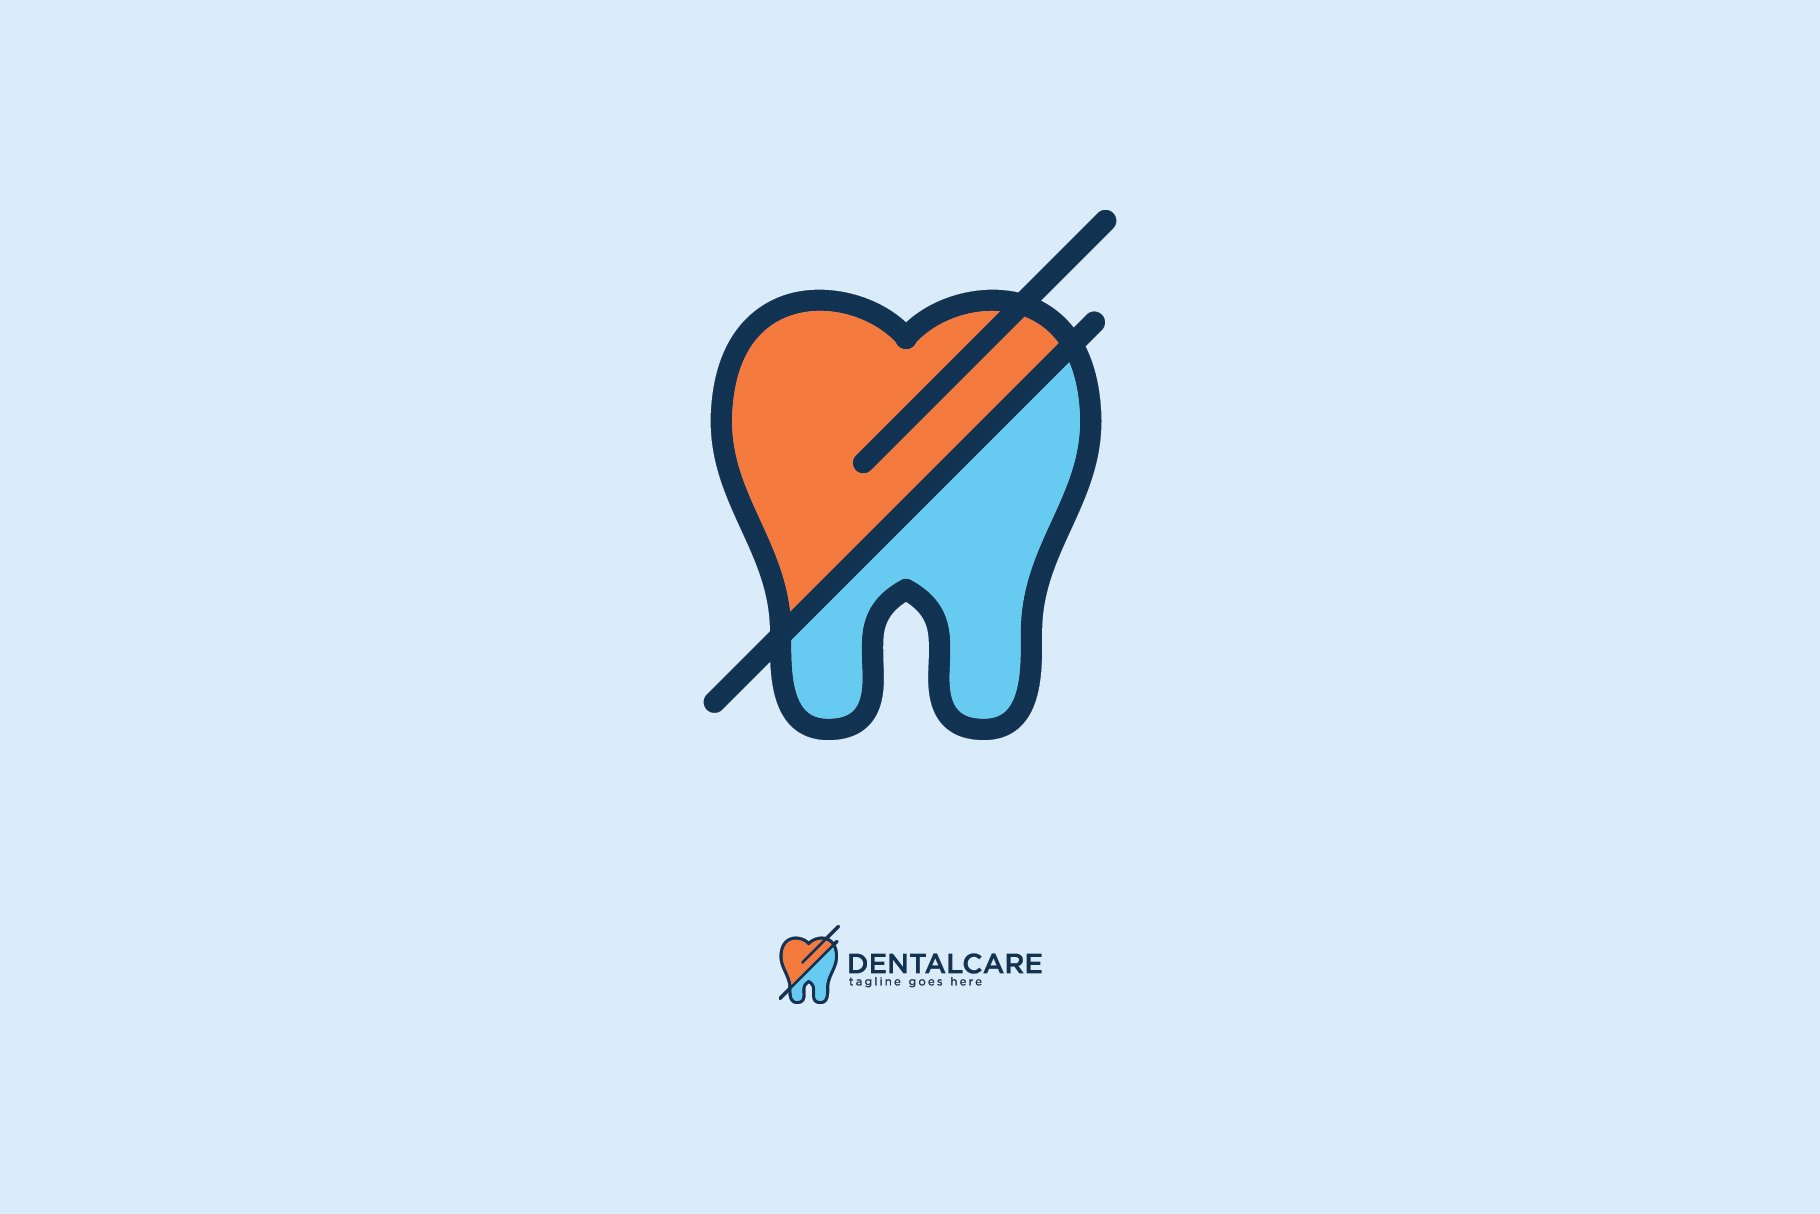 Dental Care Logo cover image.